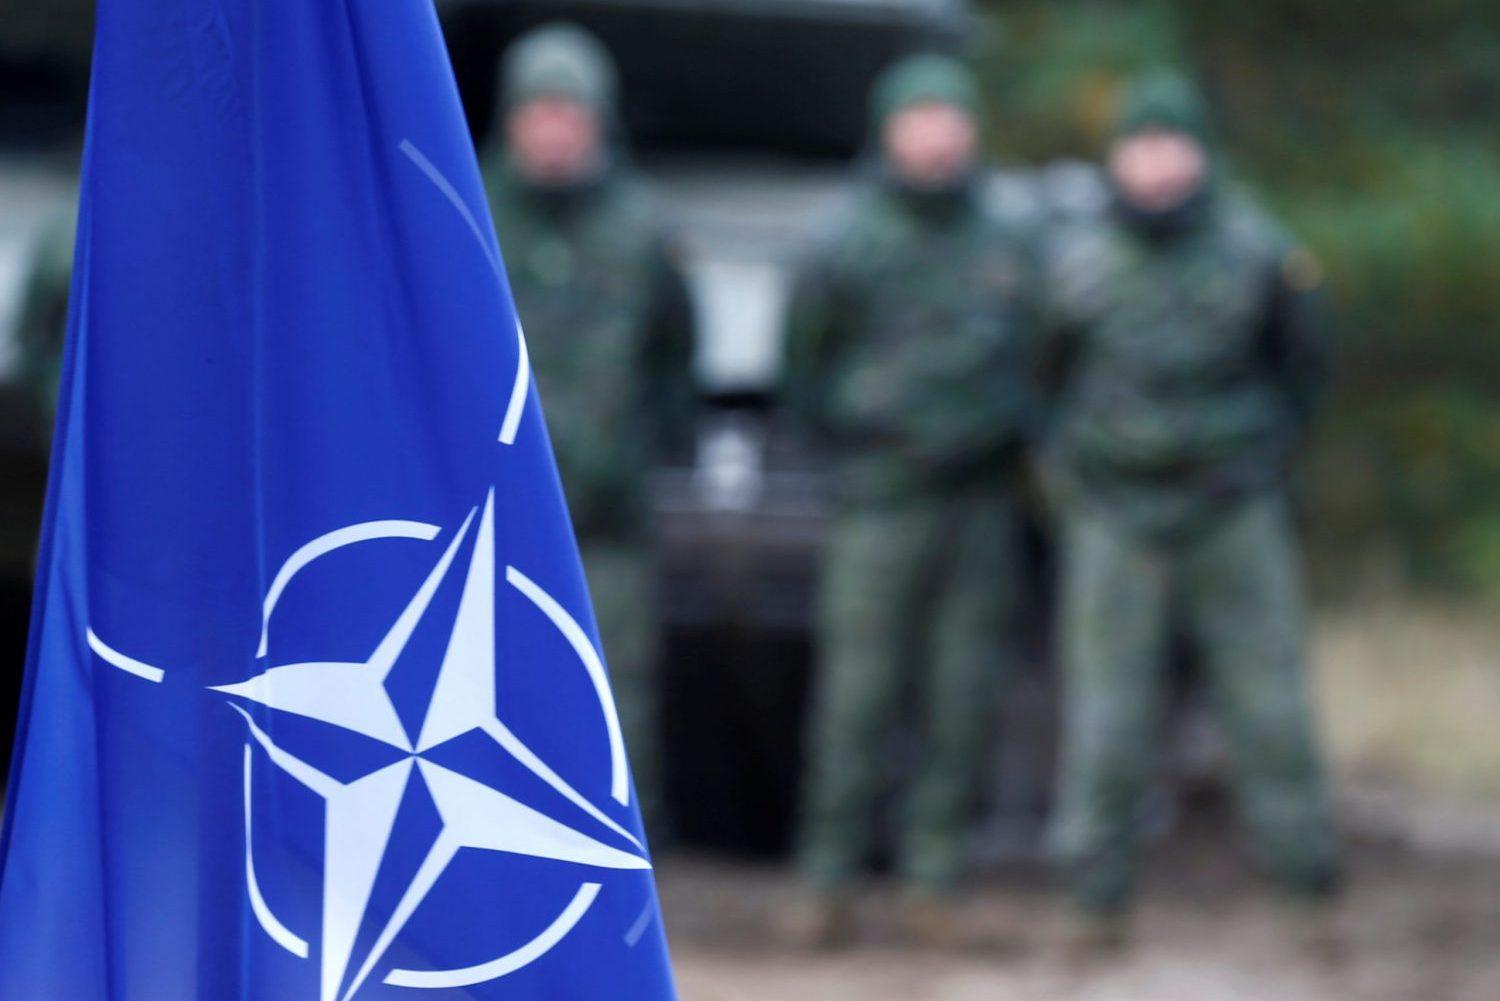 NATO: Strane u sukobu moraju hitno da prekinu neprijateljstva